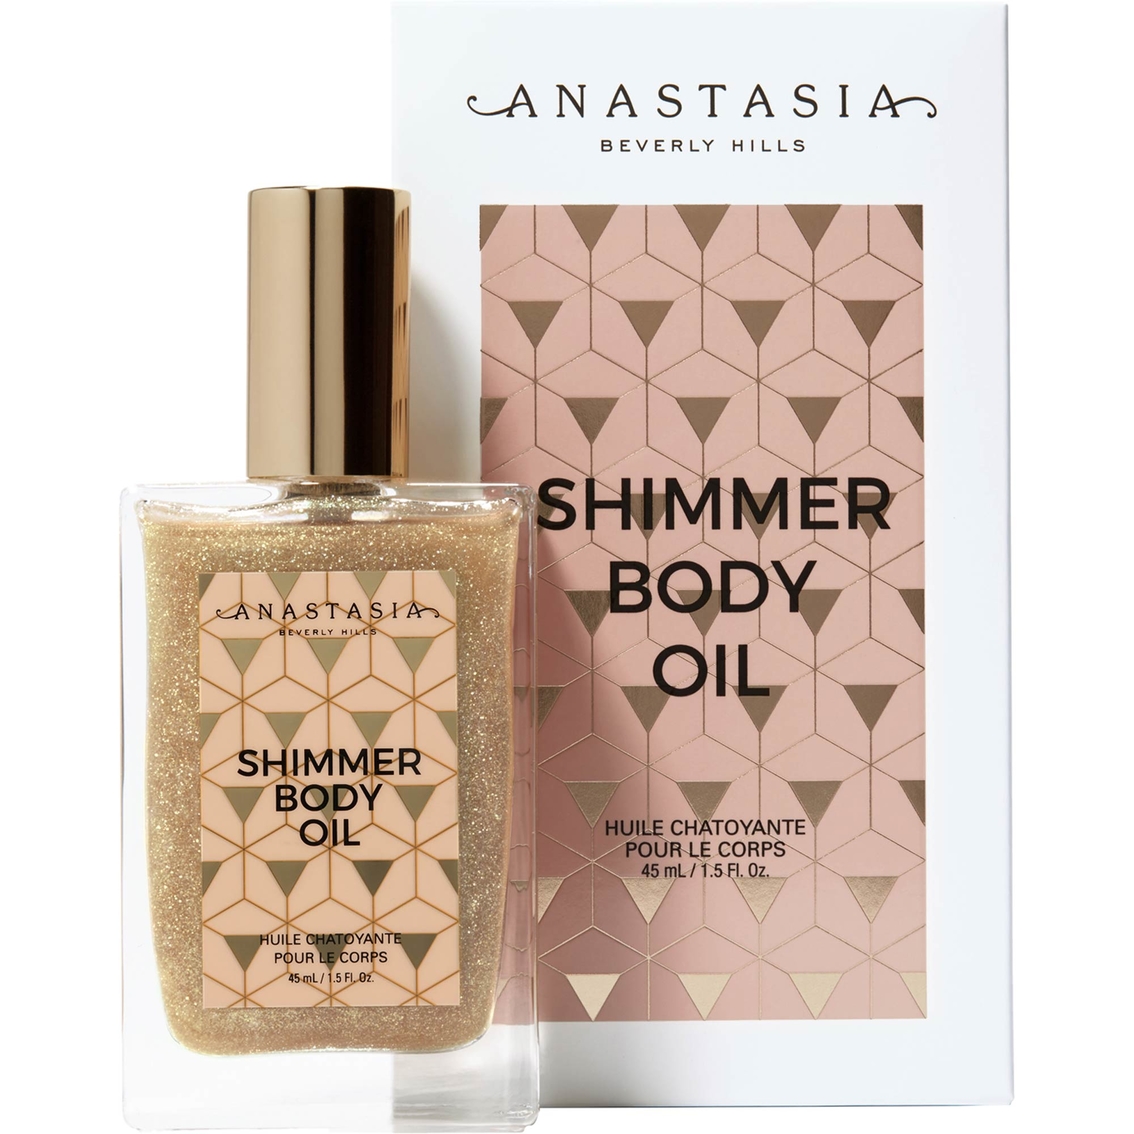 Anastasia Beverly Hills Shimmer Body Oil - Image 2 of 3